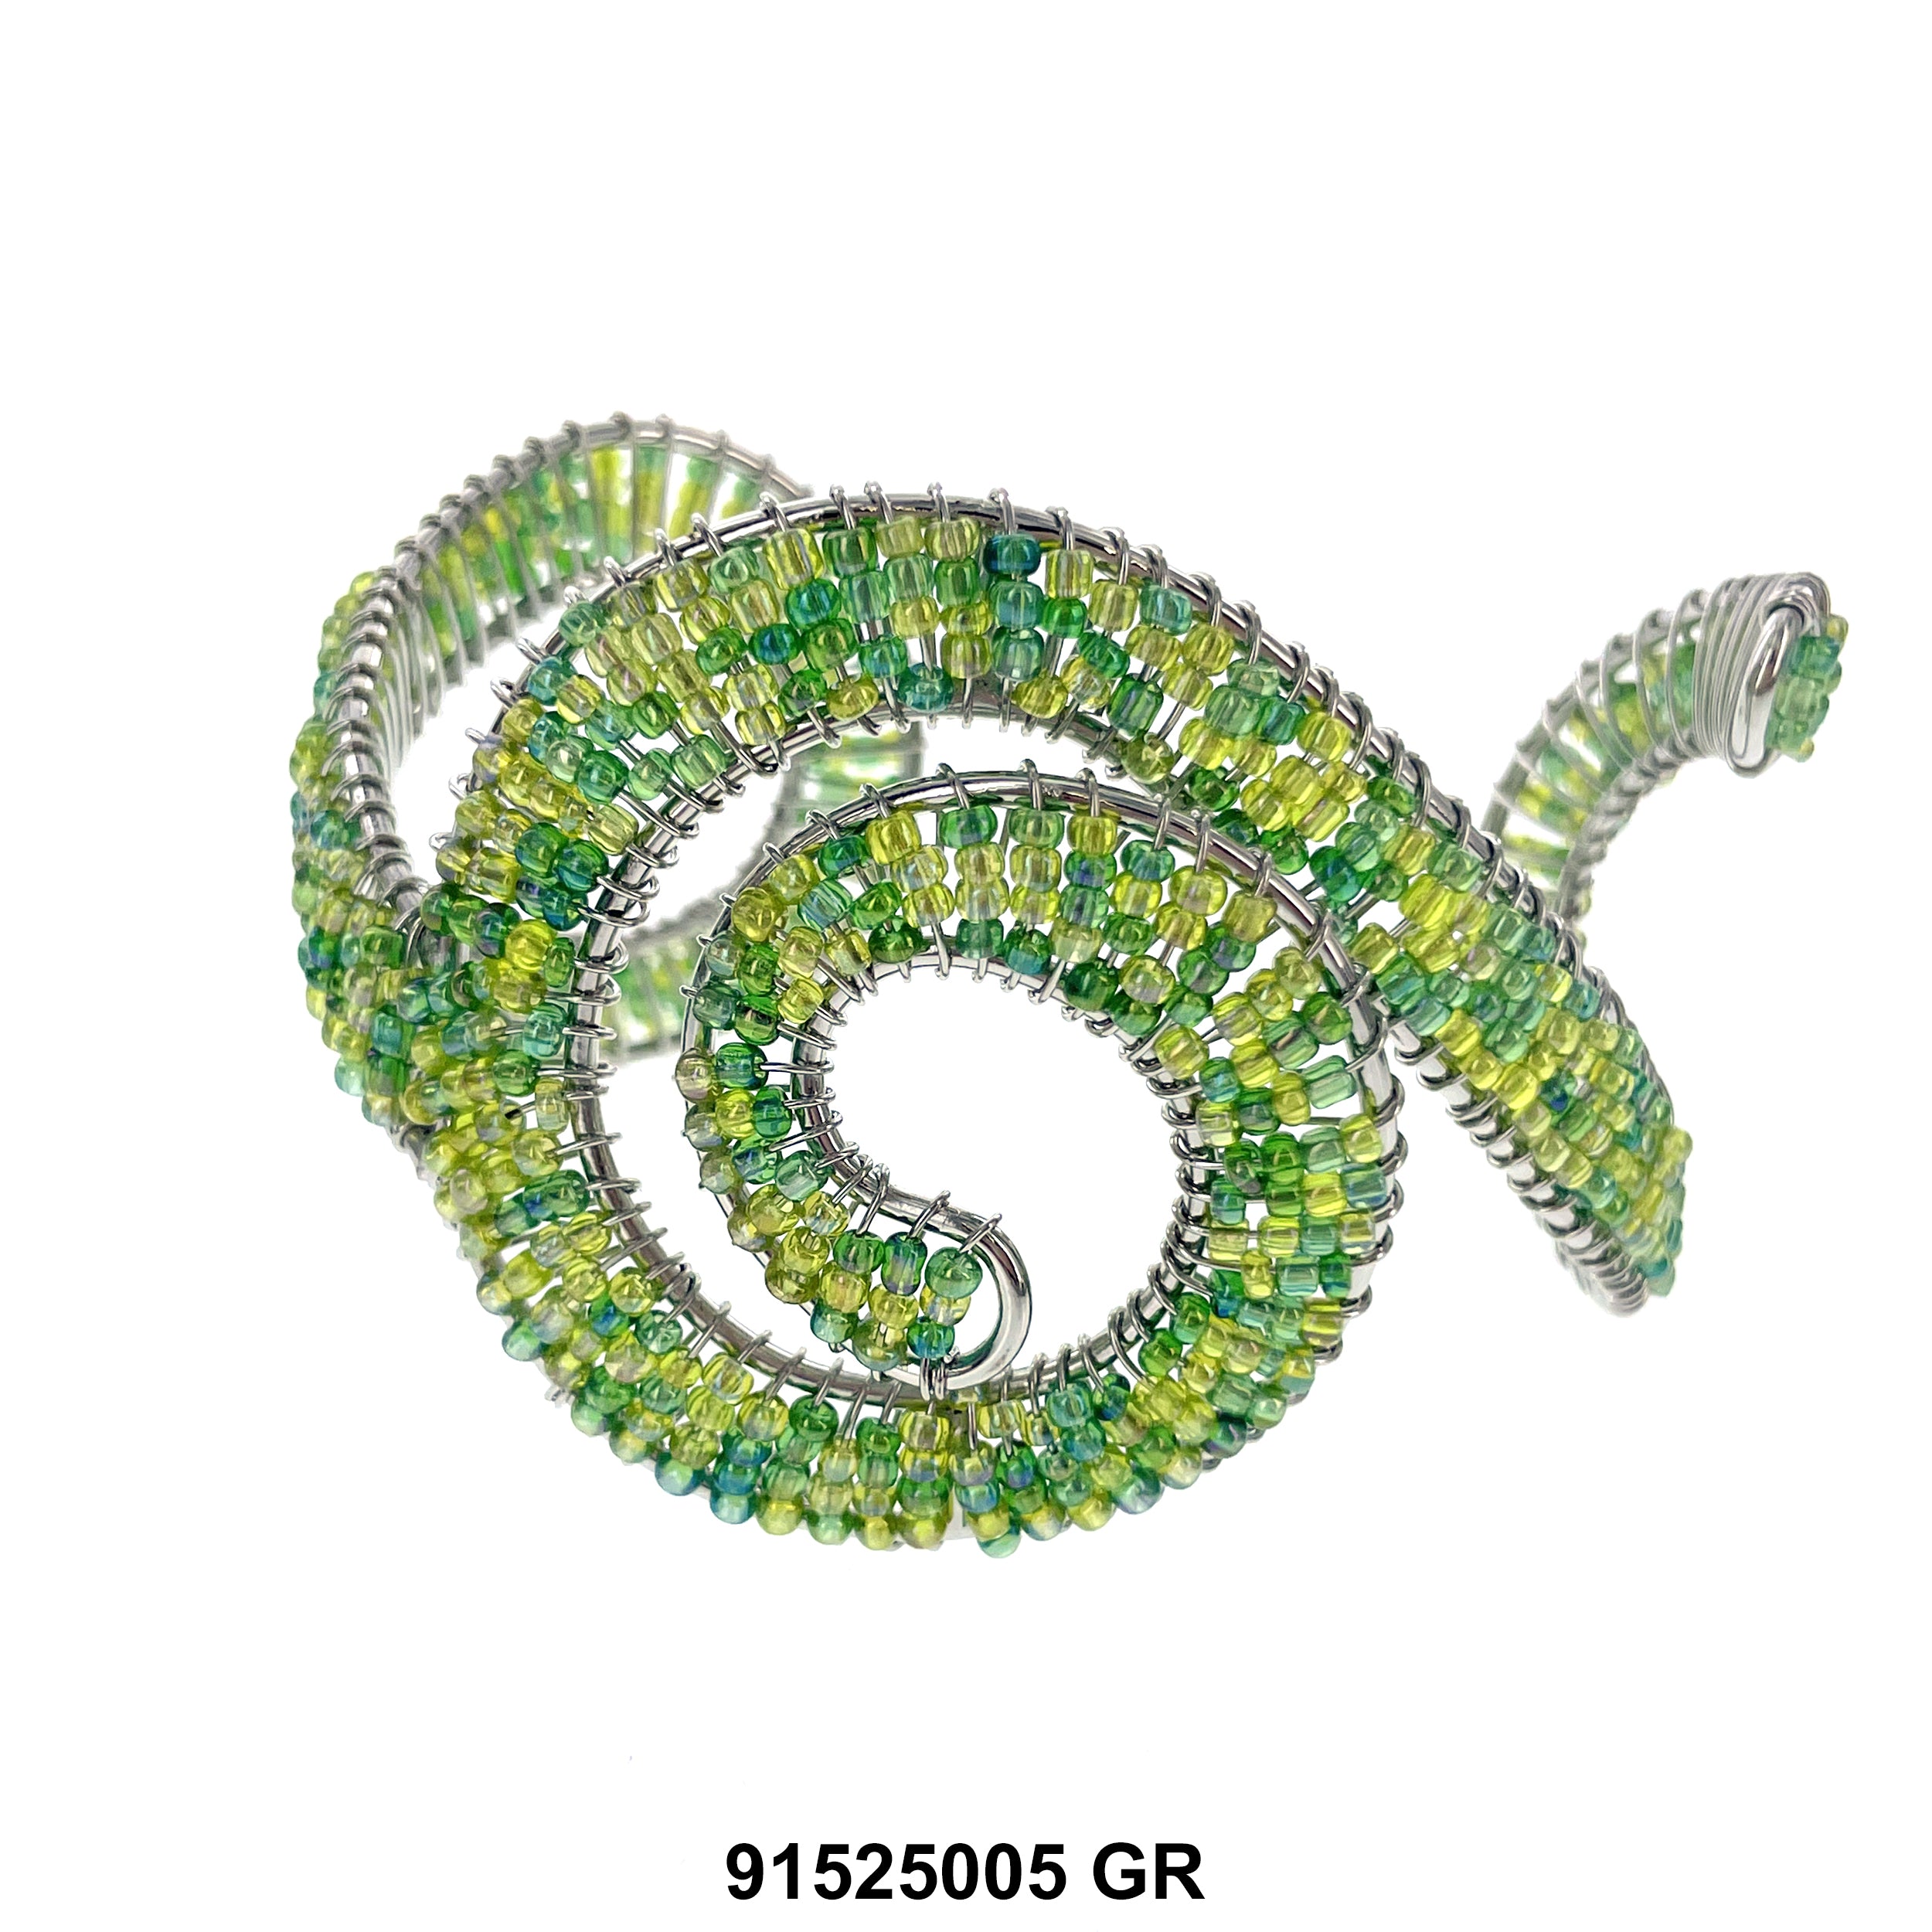 Cuff Bangle Bracelet 91525005 GR